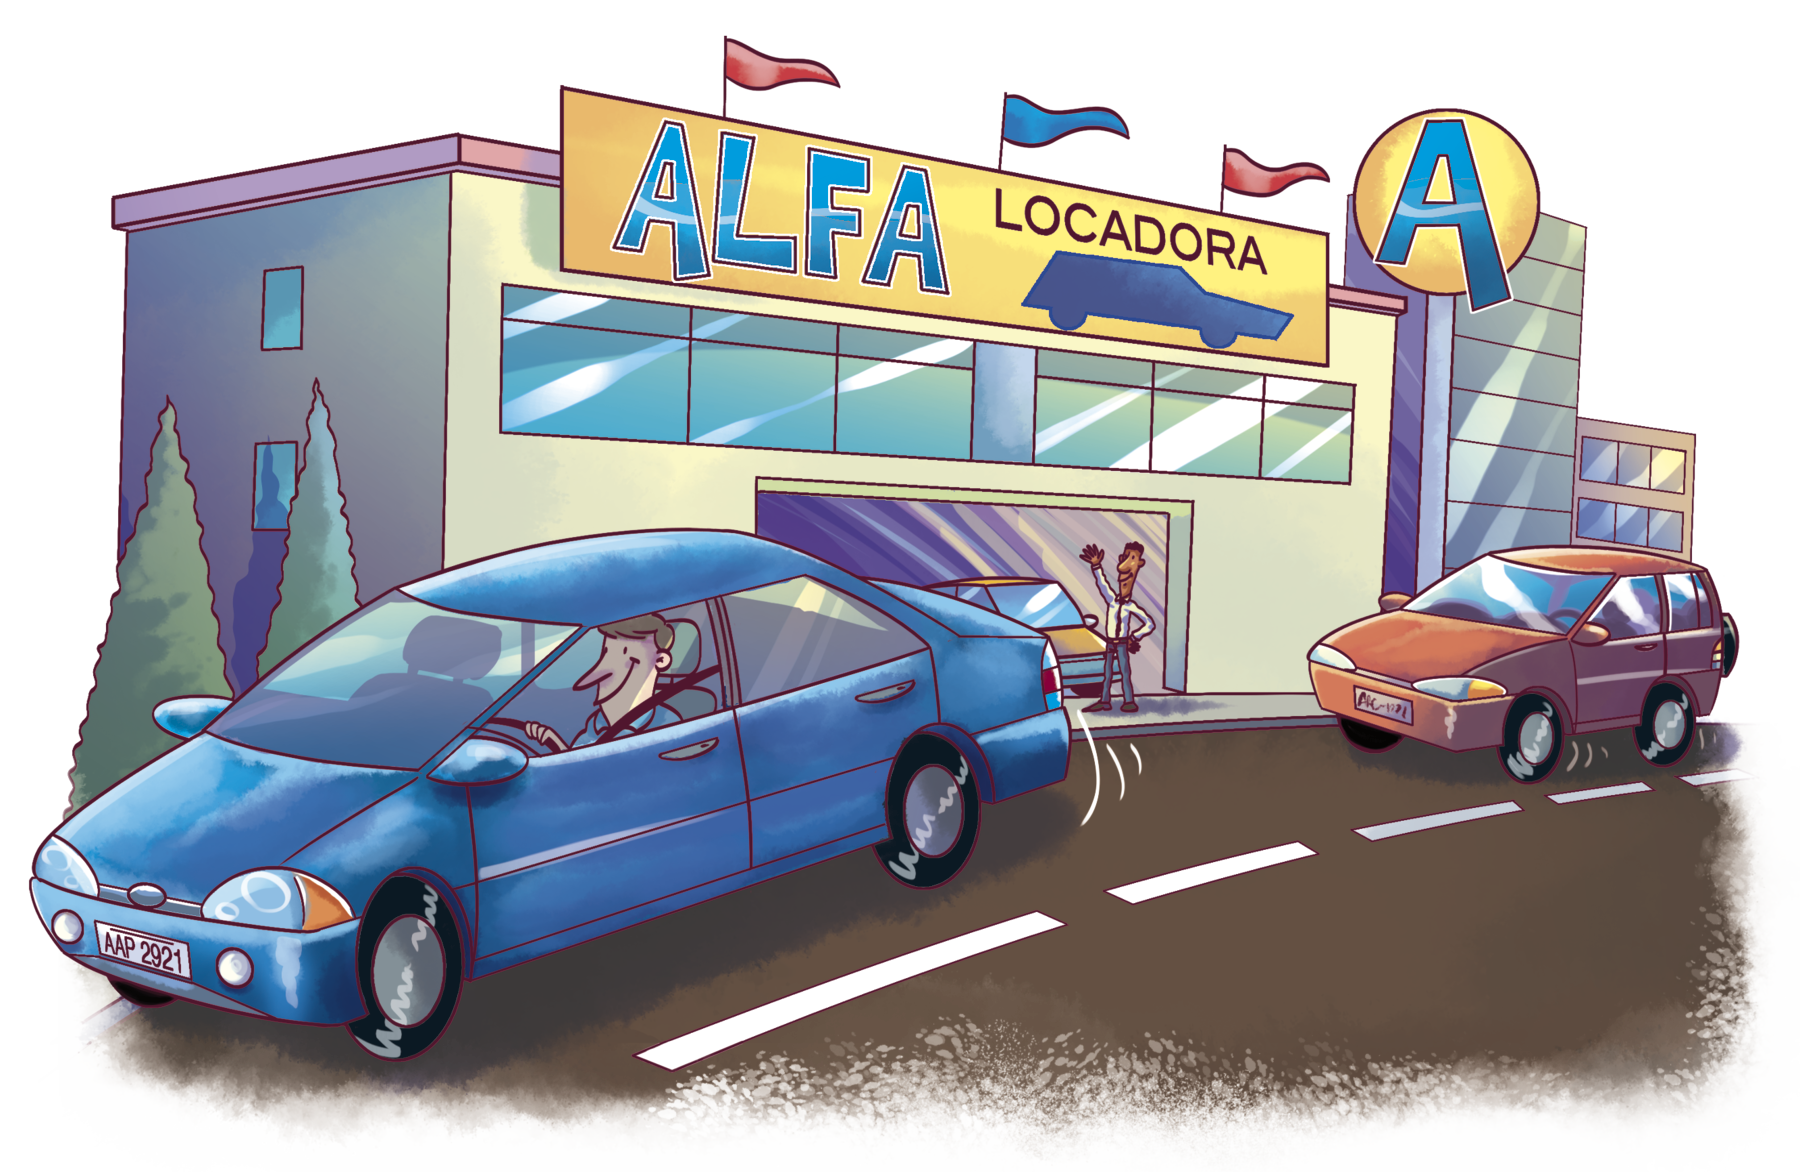 lustração: Uma locadora de carros em uma rua. Na locadora, há uma porta na entrada e uma placa com o nome 'Alfa'. Na rua, há um carro azul e um vermelho passando